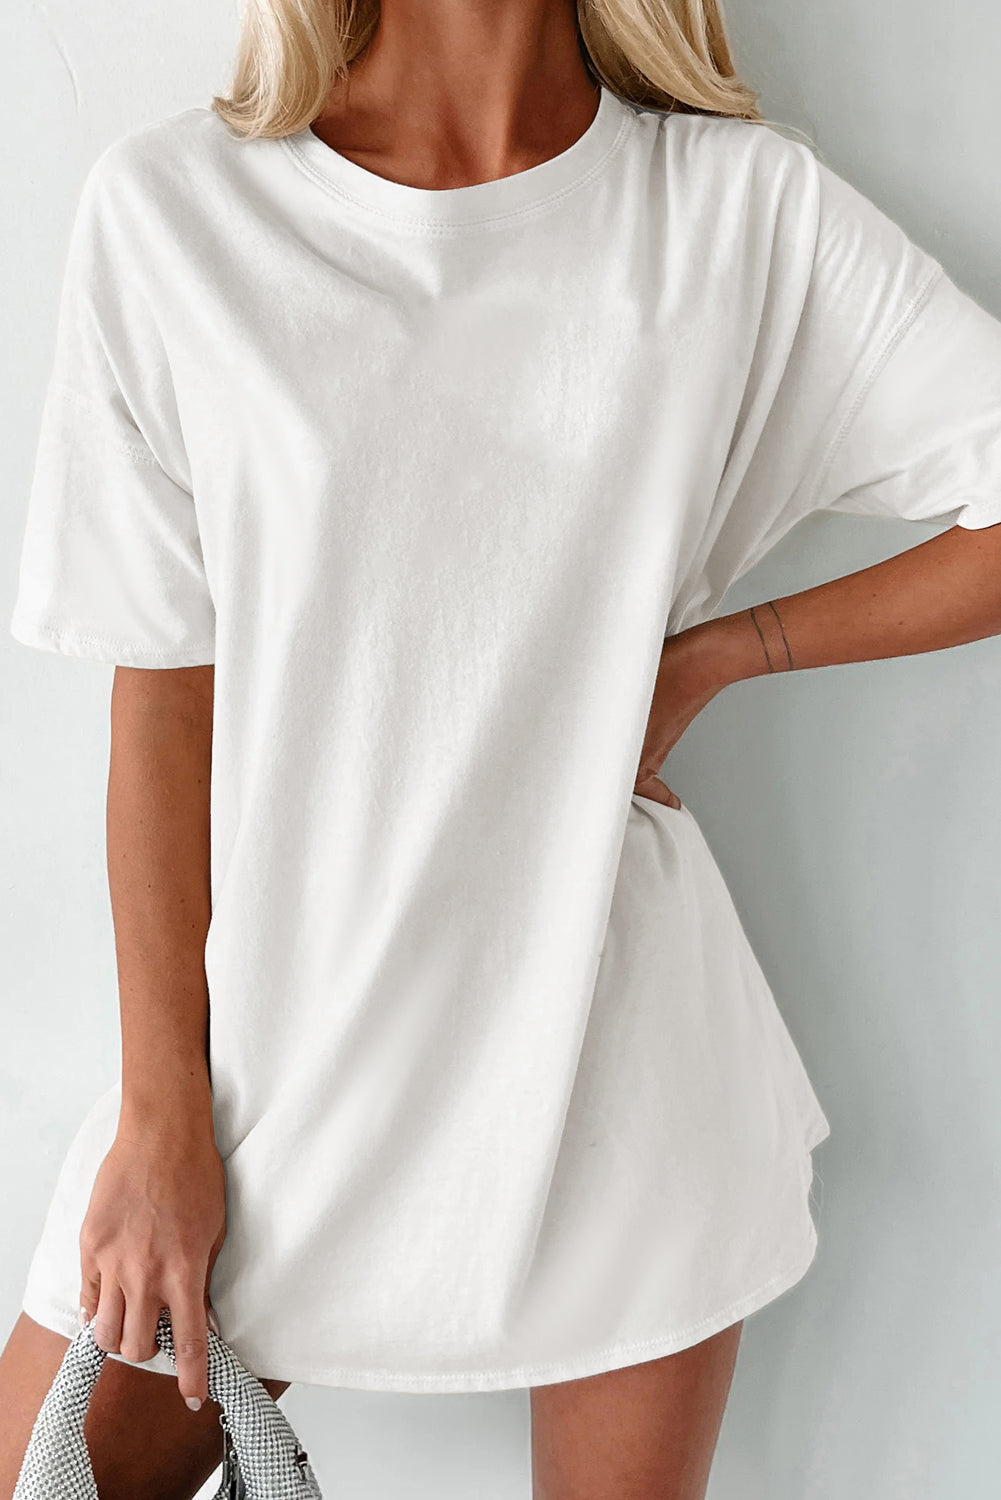 T-shirt tunica basic girocollo tinta unita bianca